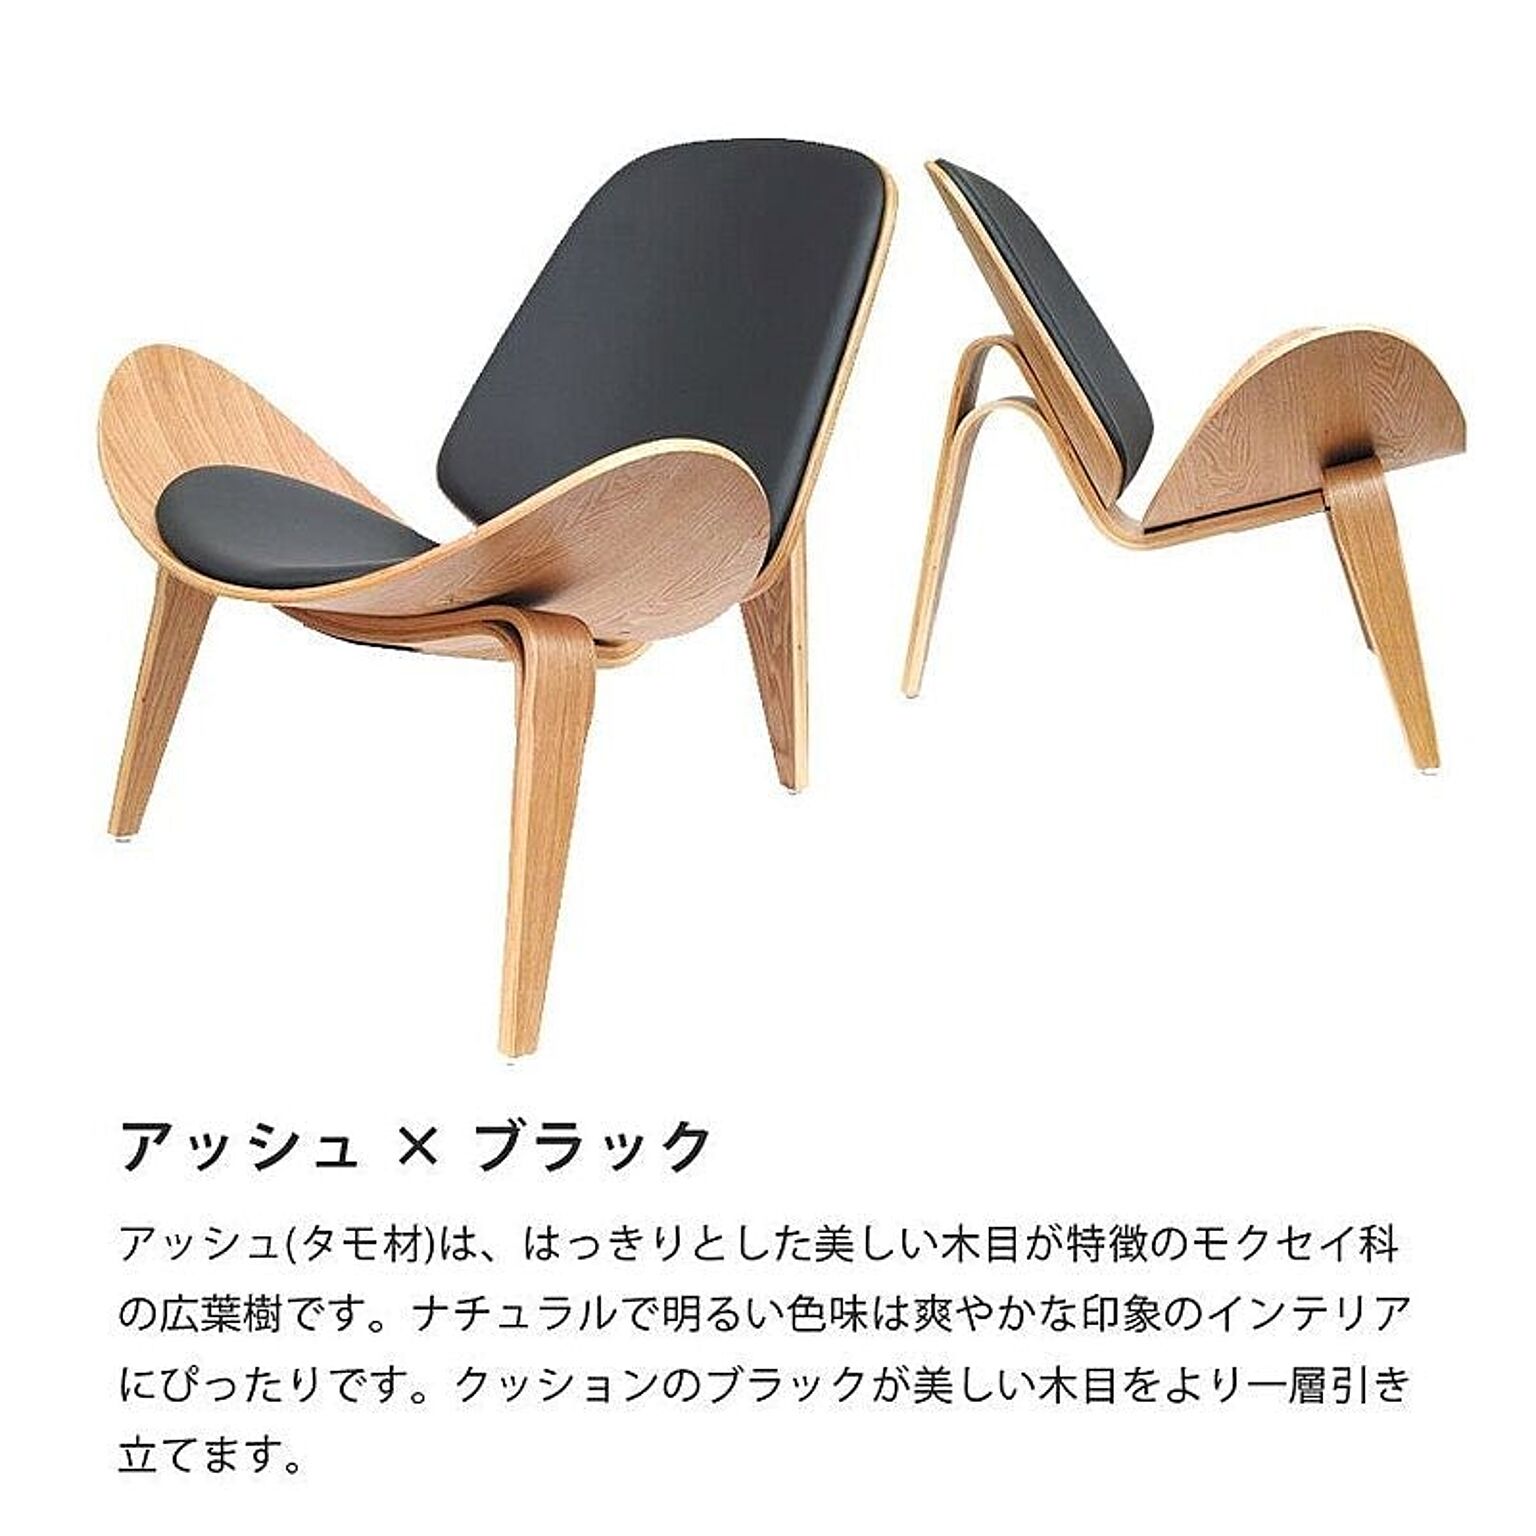 ボートチェア 木製 成形合板 イージーチェア ｜ 椅子 チェア デザイナーズ リプロダクト ウォールナット アッシュ ブラック ホワイト 完成品